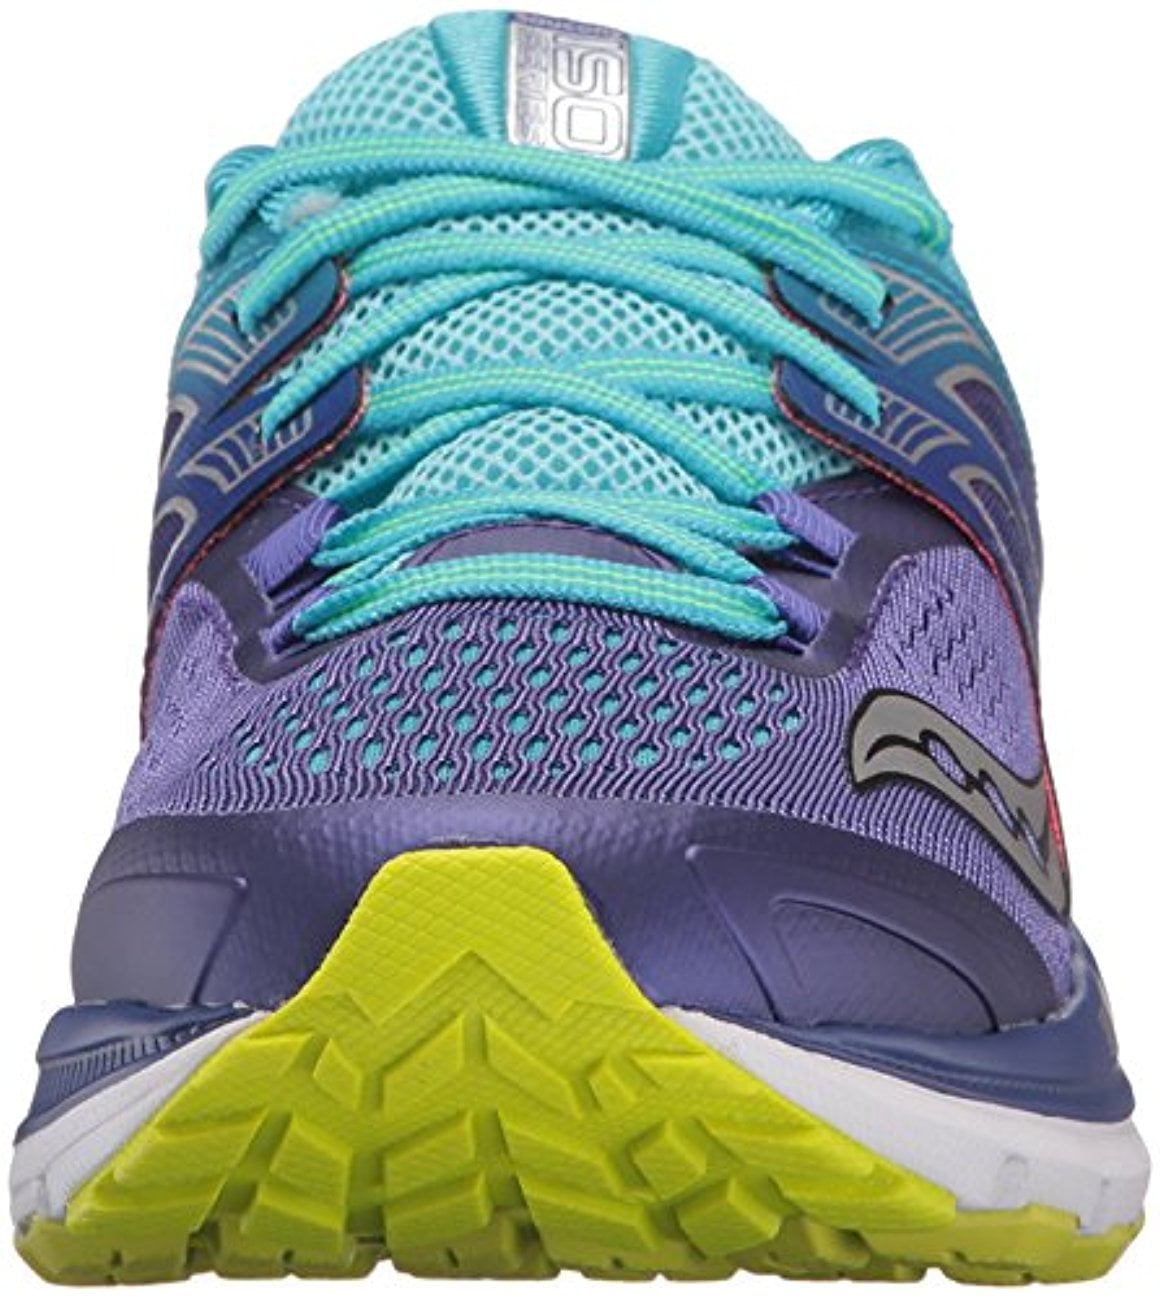 Saucony Women's Triumph Iso 3 Running Shoe, M US, Purple/Blue/Citron - Walmart.com